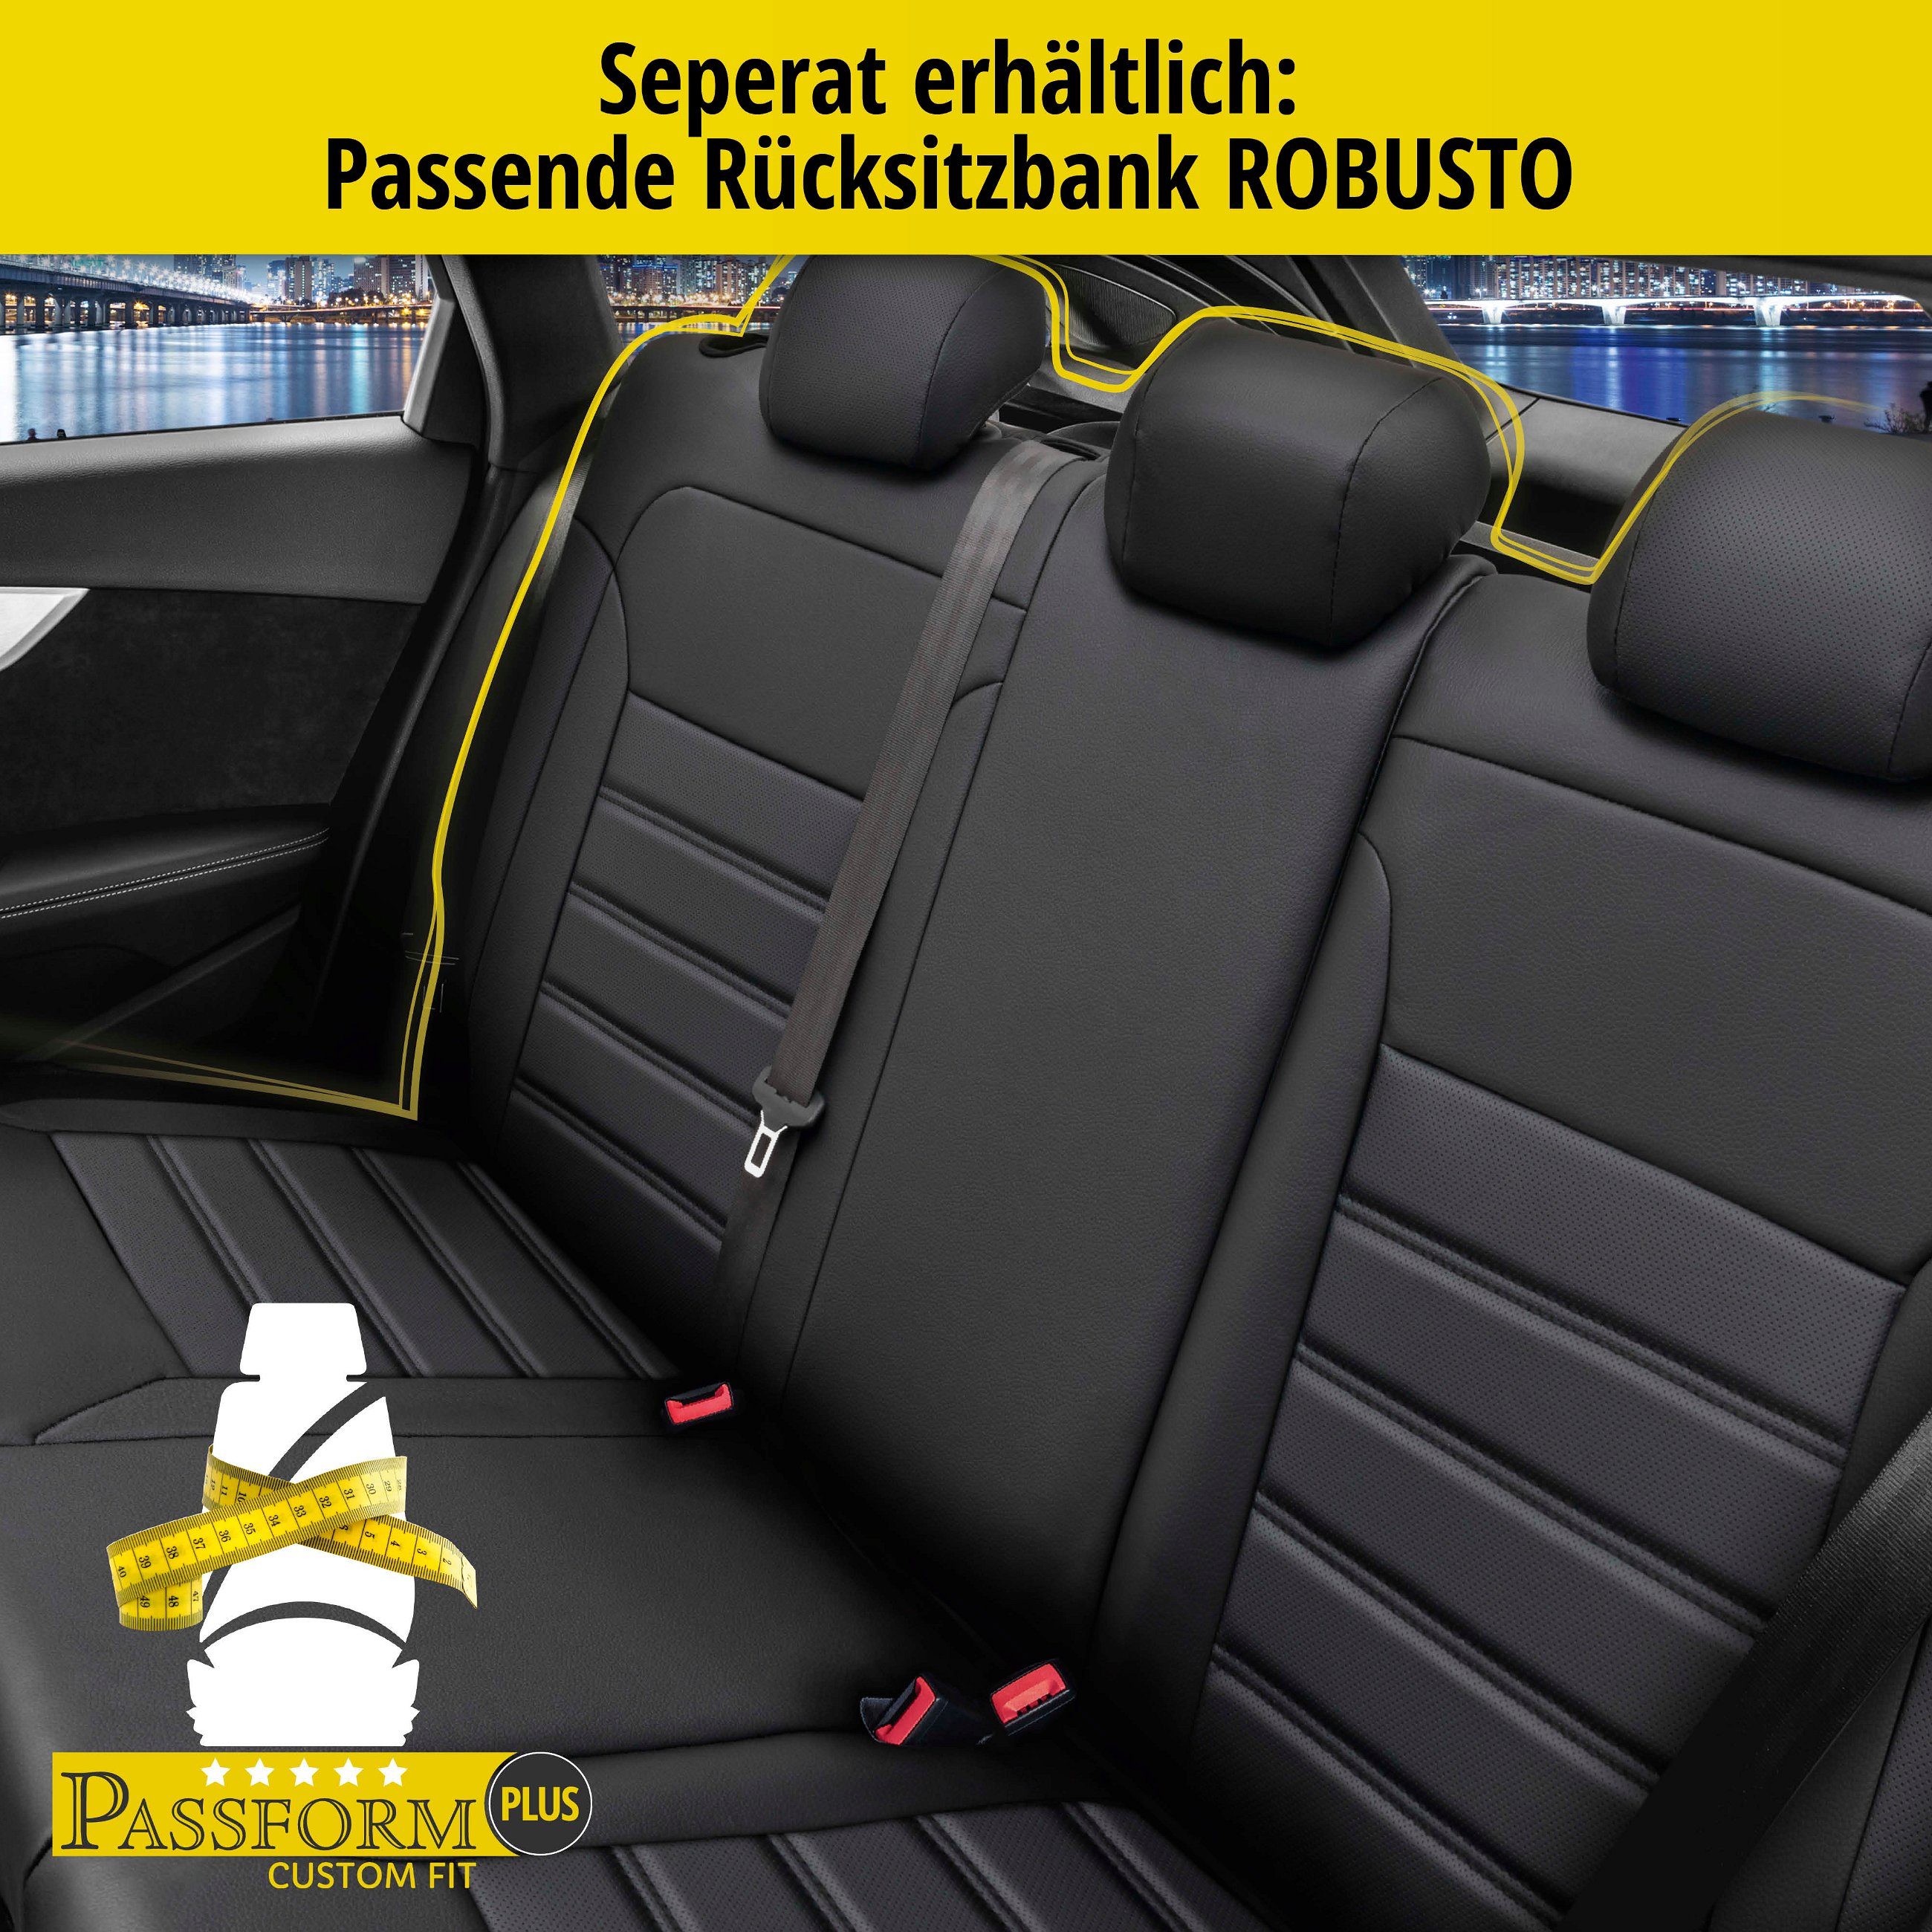 Passform Sitzbezug Robusto für VW Golf 6 Trendline 10/2008 - 12/2014, 2 Einzelsitzbezüge für Normalsitze